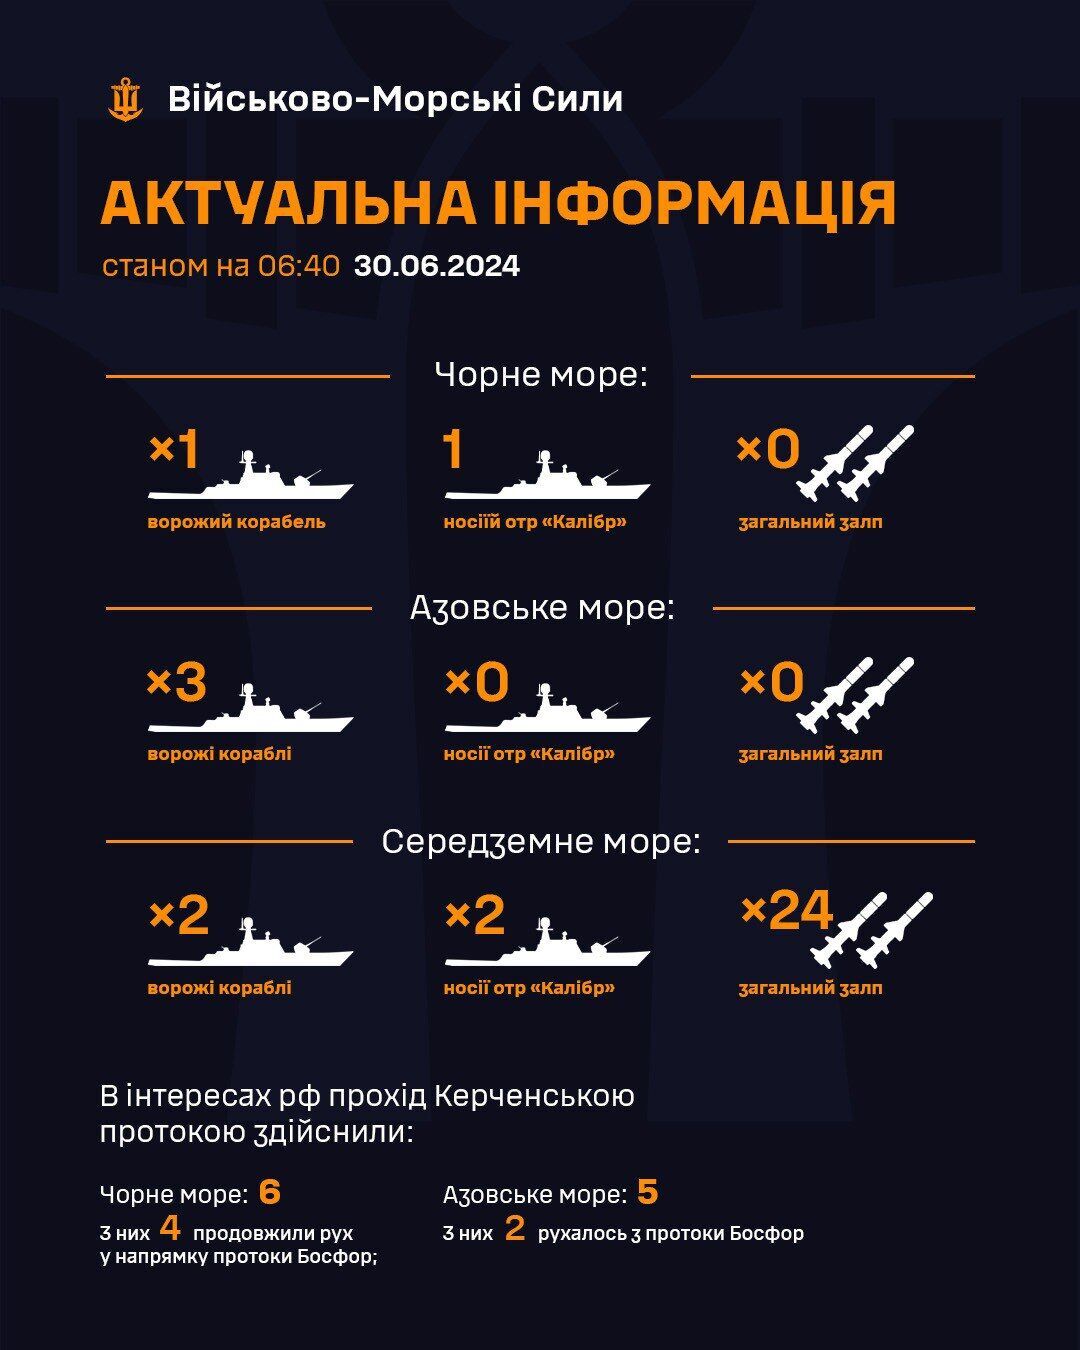 Россия держит корабли-носители "Калибров" в водах двух морей: самые свежие данные